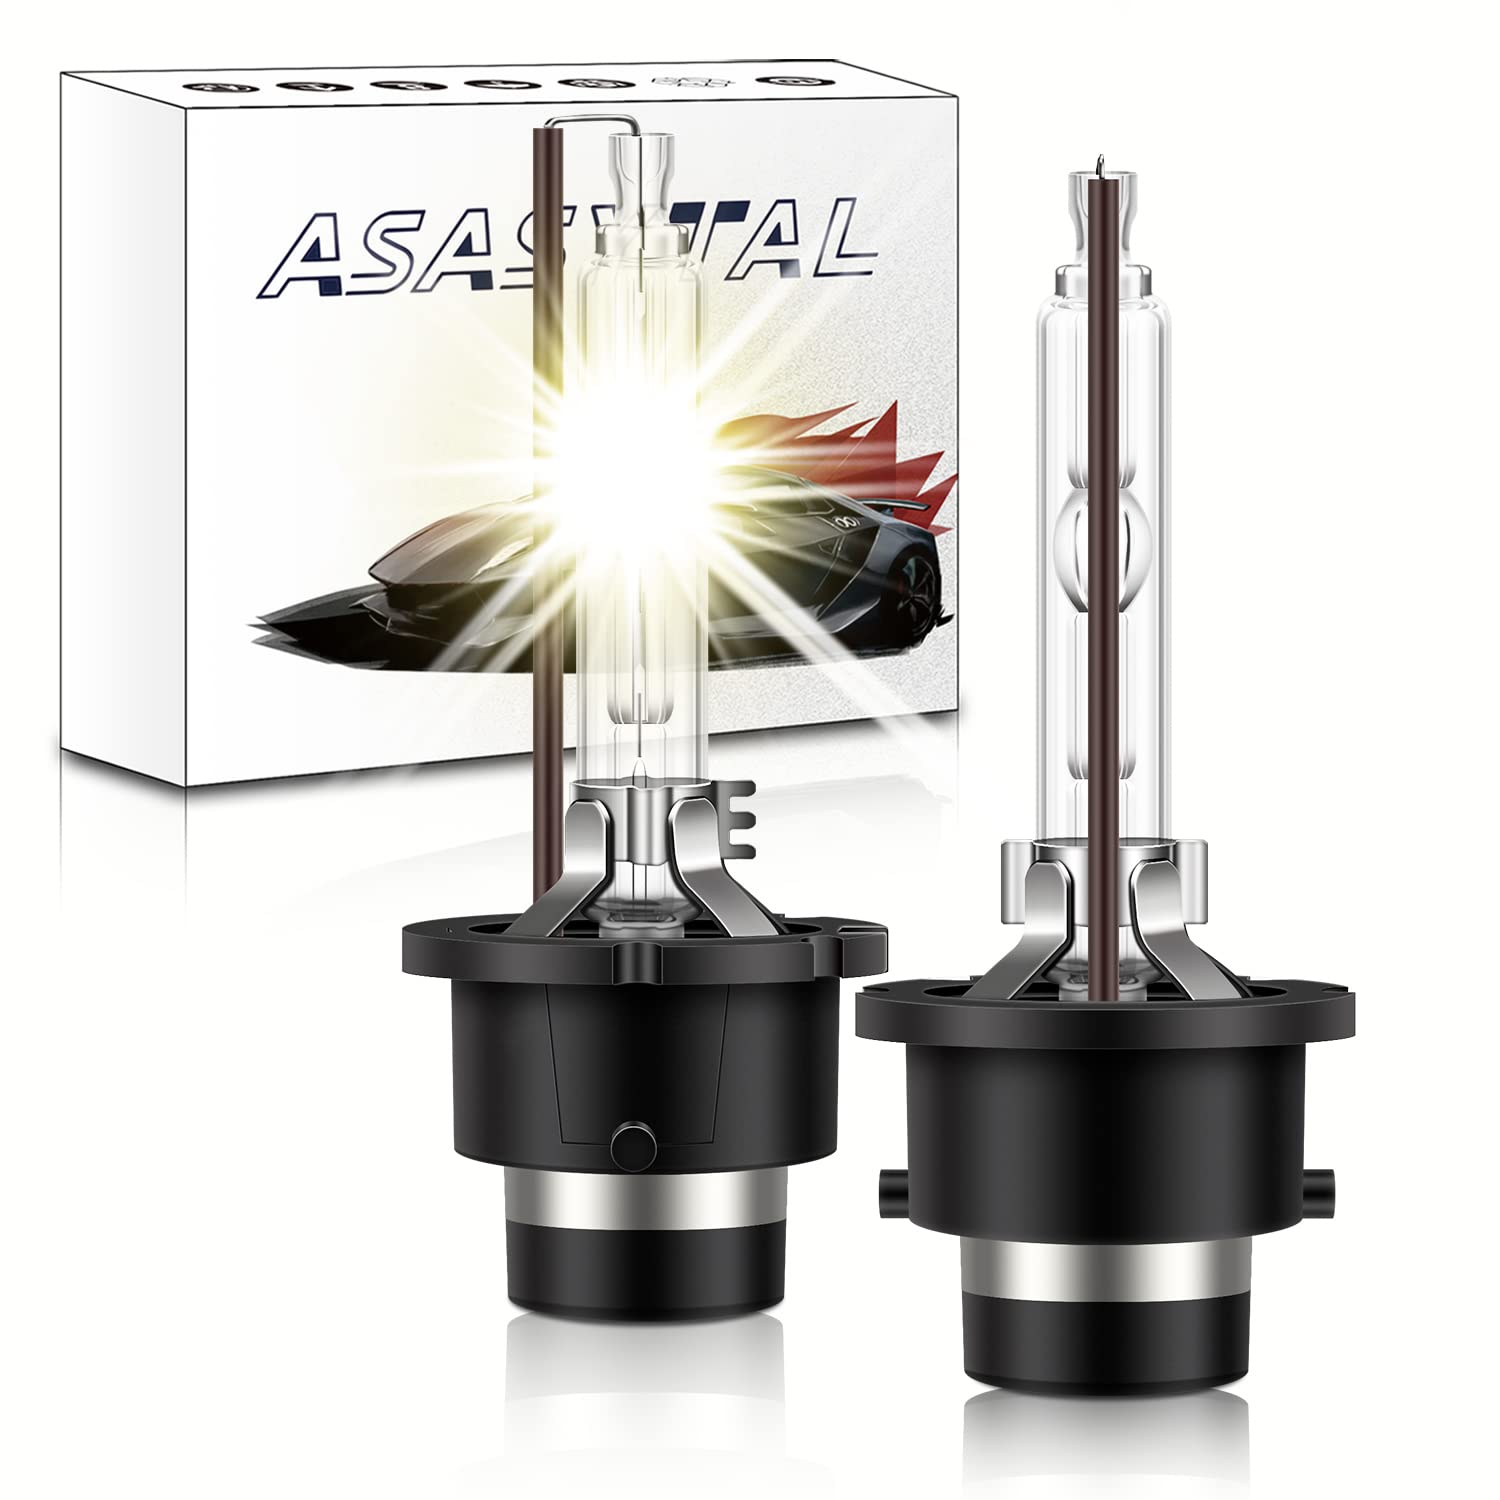 Asasytal D2S Xenon-HID-Lampen, 35W Xenarc Scheinwerfer 4300K Warmweiß Super hell Umrüstsatz für Bi Xenon Scheinwerfer, Xenarc-Scheinwerfer für Original Xenonlampen Upgrade, 2er-Set von Asasytal